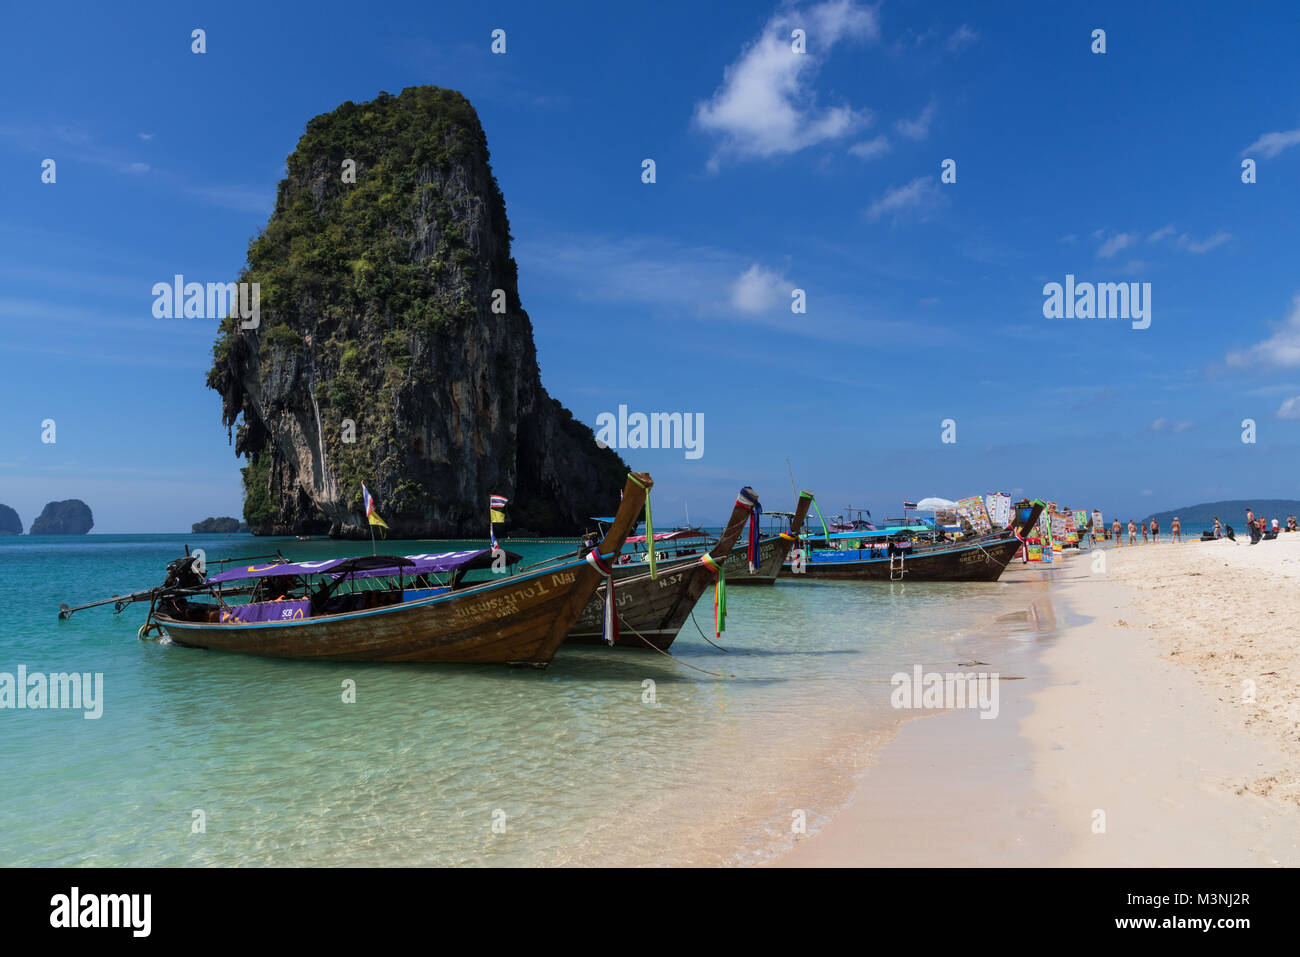 Atemberaubende Ausblicke auf die Landschaft aus einer Reihe von Long-tail Boote auf einem schönen goldenen Sandstrand in Thailand mit blauem Himmel verankert und hoch aufragenden Felsen Insel Stockfoto